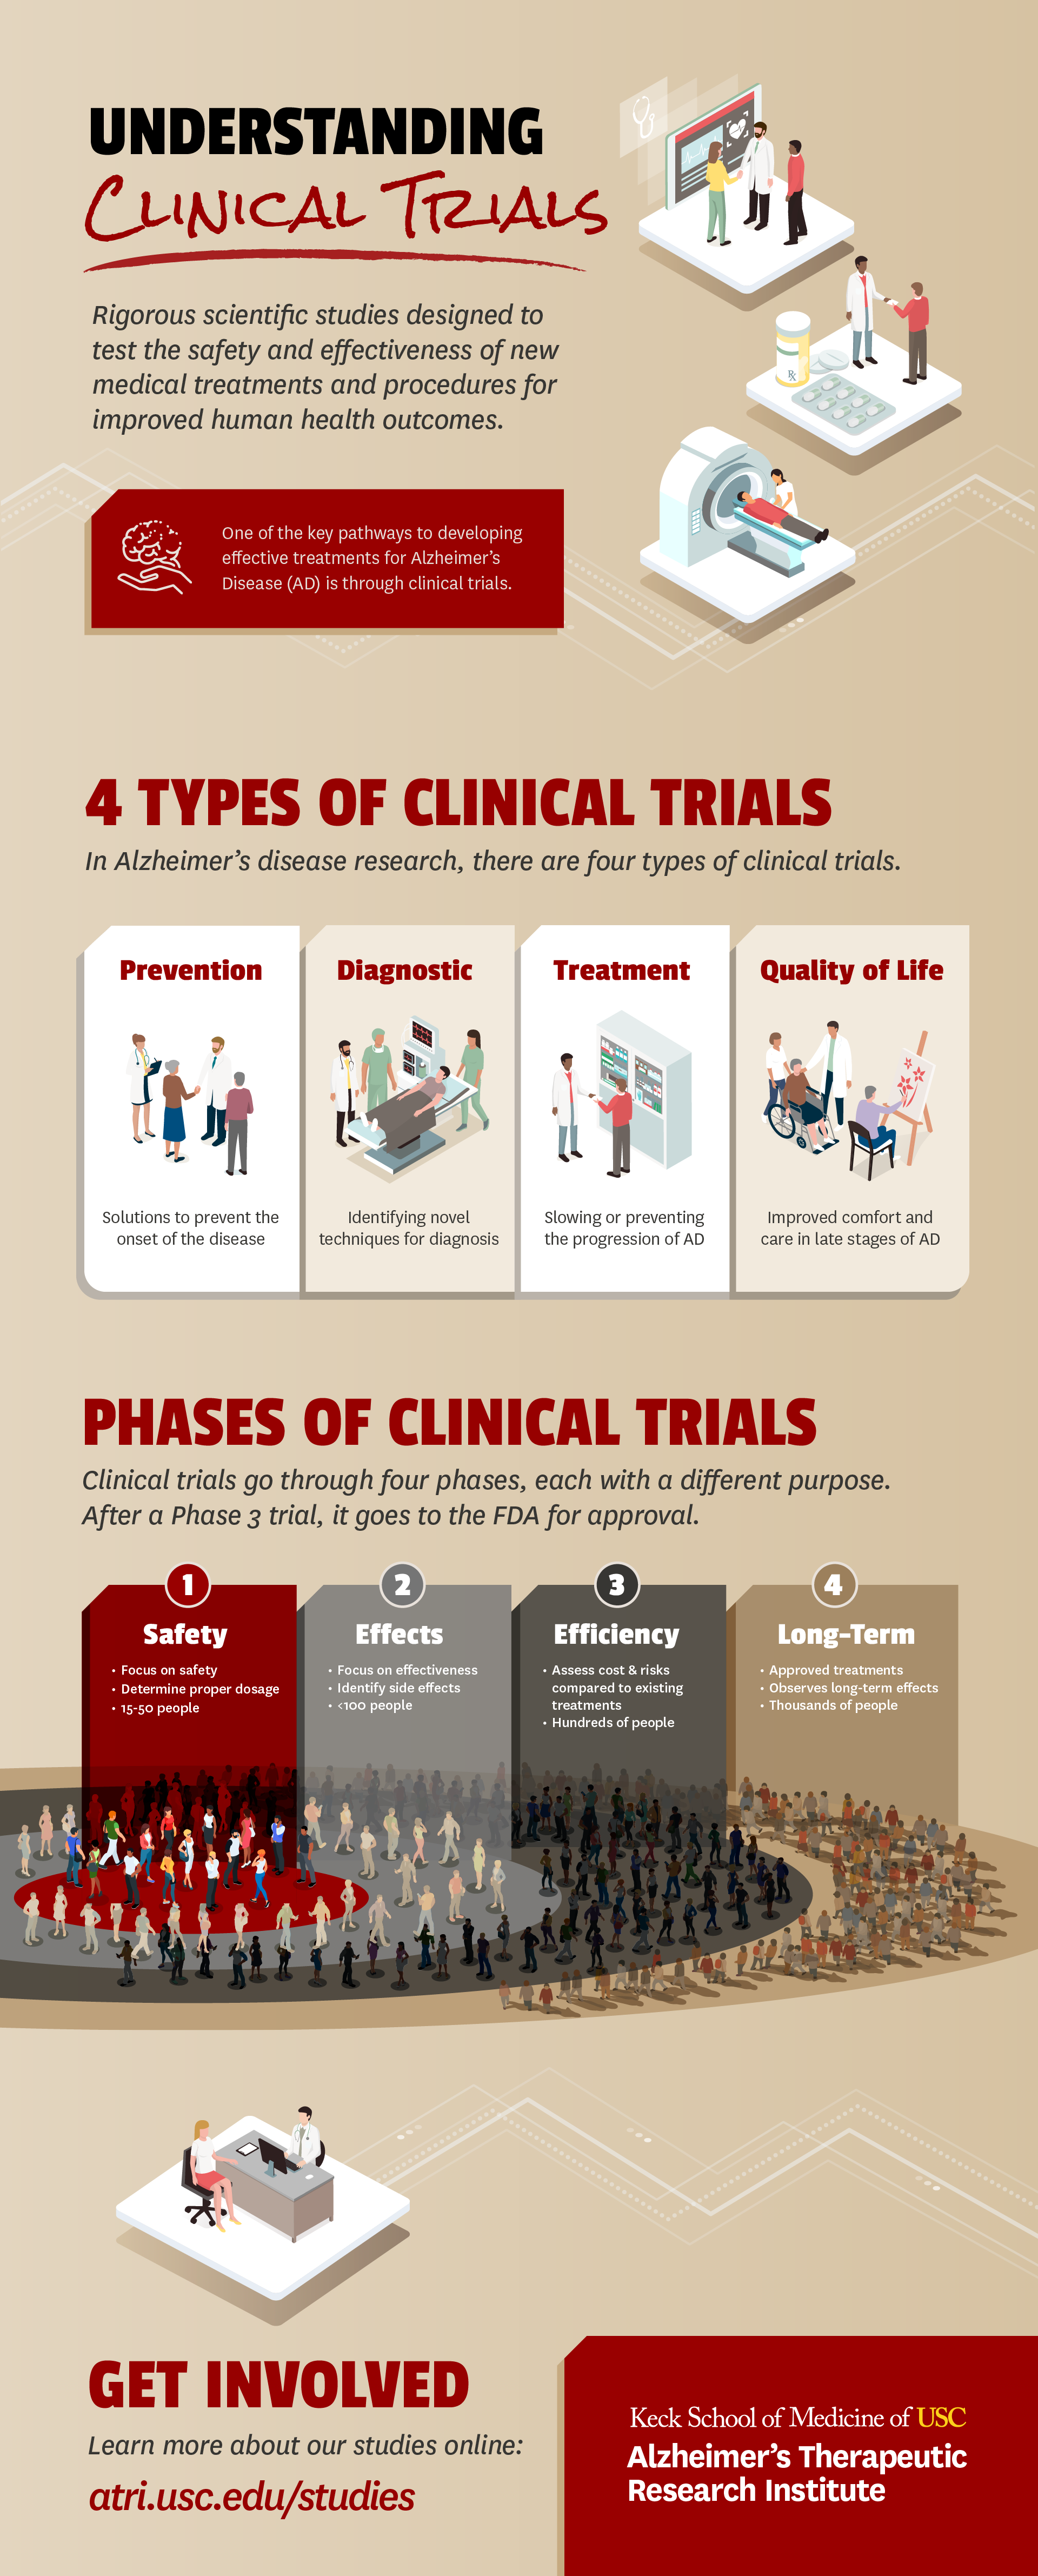 ATRI_ClinicalTrialBasics_122923_Infographic